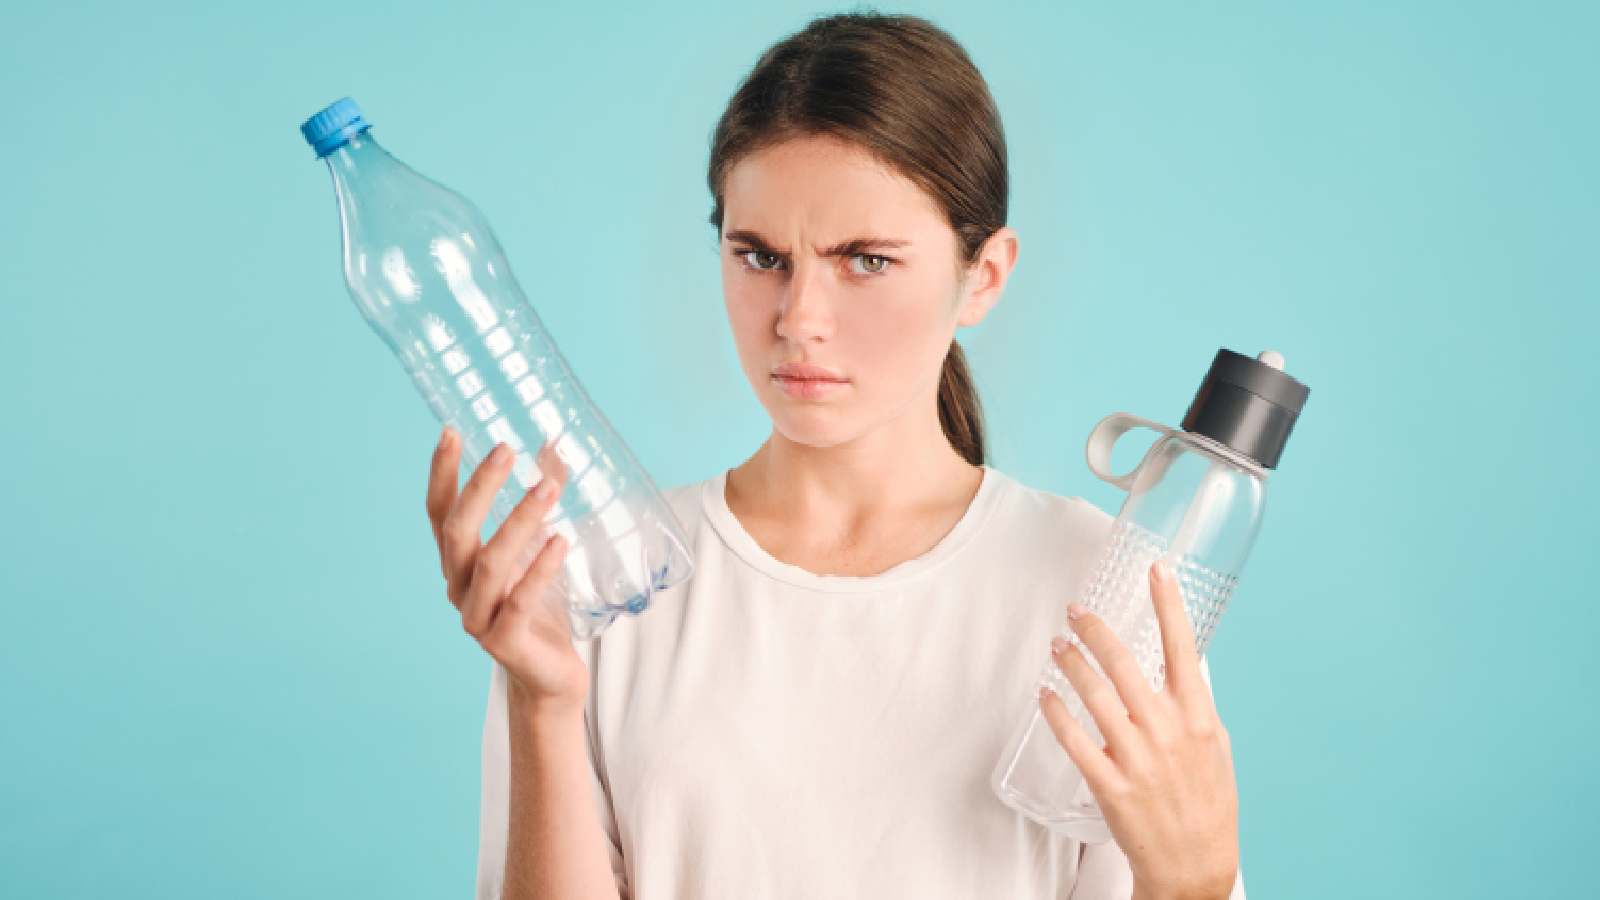 इनफर्टिलिटी और थायरॉइड की समस्या दे सकता है प्लास्टिक की बोतल का लगातार इस्तेमाल : शोध